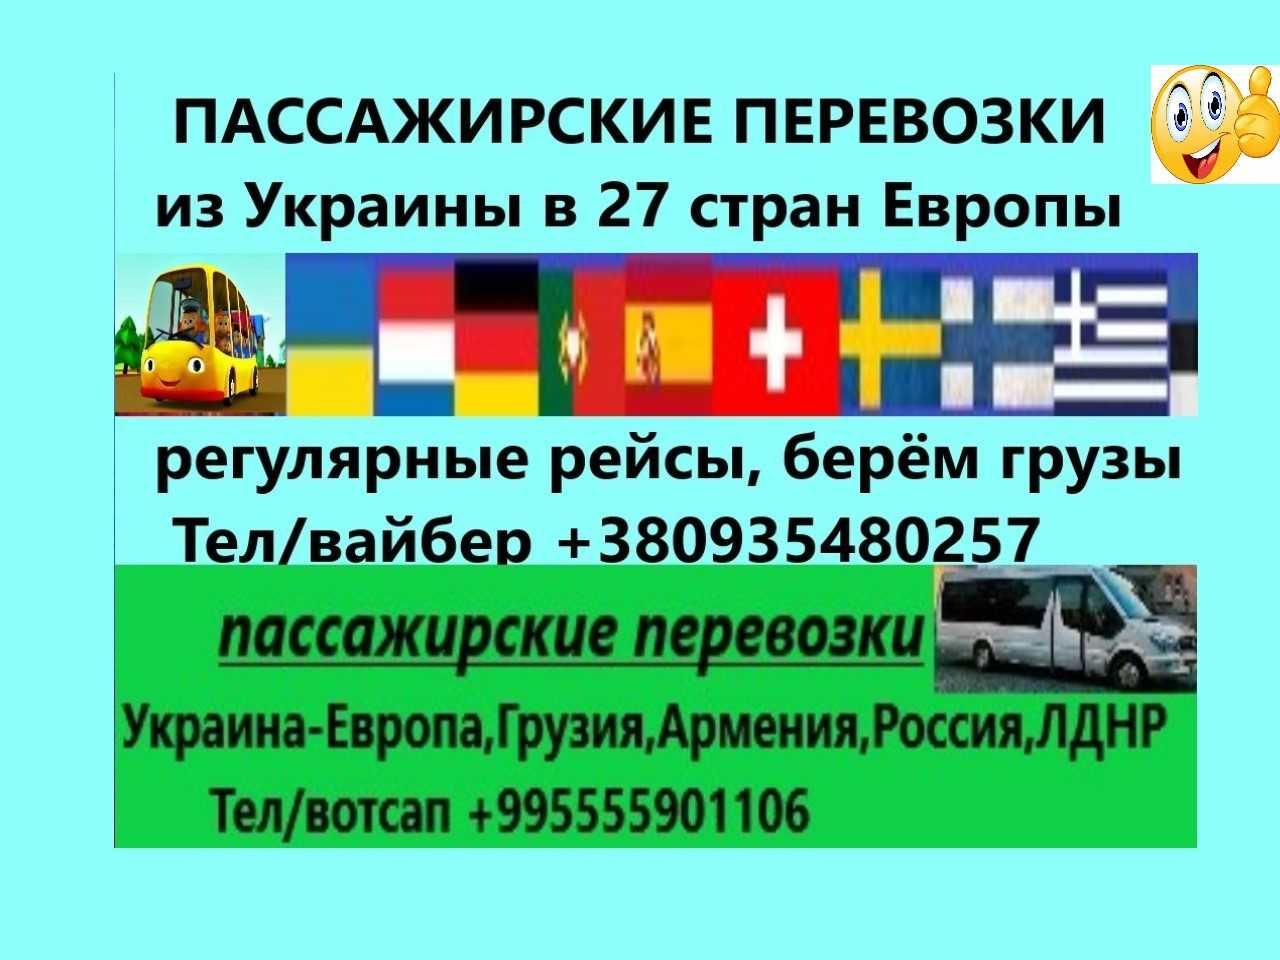 Пассажирские перевозки в 27 стран Европы из Украины и обратно